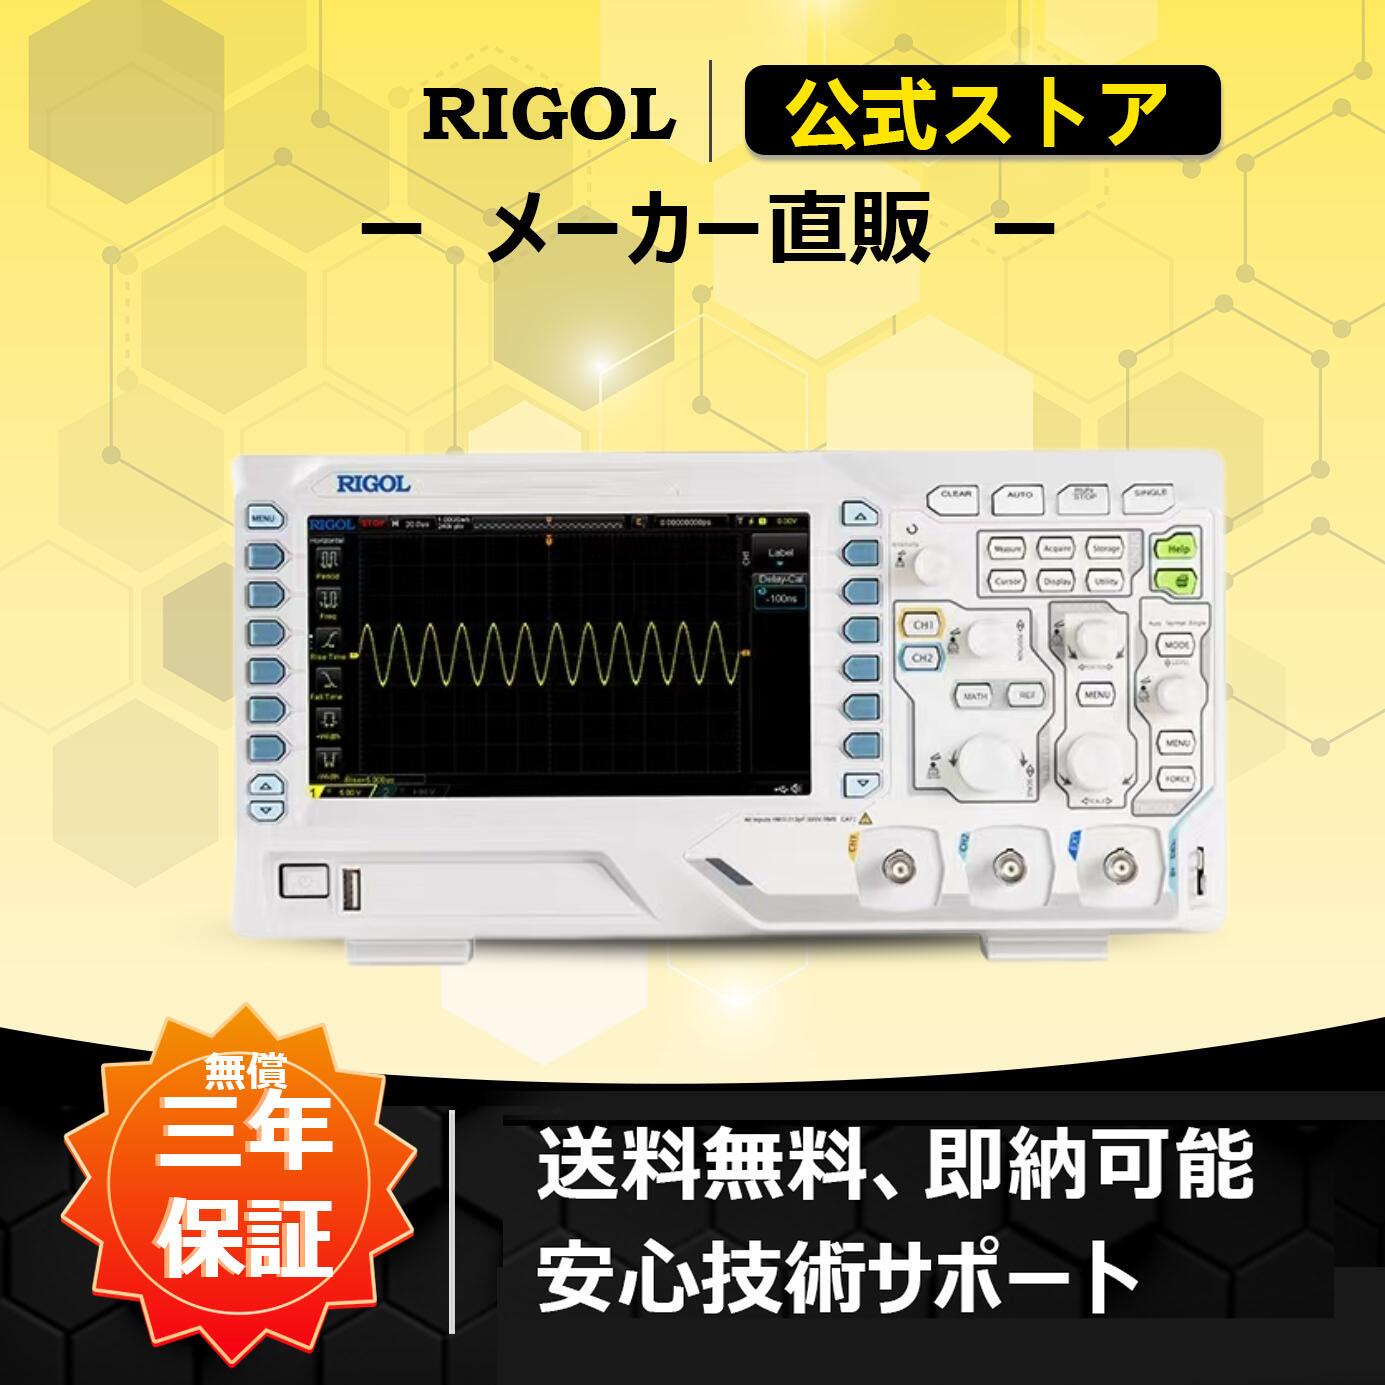 送料無料 RIGOLデジタル オシロスコープ DS1102Z-E 2アナログチャンネル 100MHz周波数帯域 1GSa/sリアルタイム サンプルレート 24Mポイントレコード長 8bit高解像度 最大10V/div垂直軸レンジ 最高30000wfms/s高速波形取り込みレート